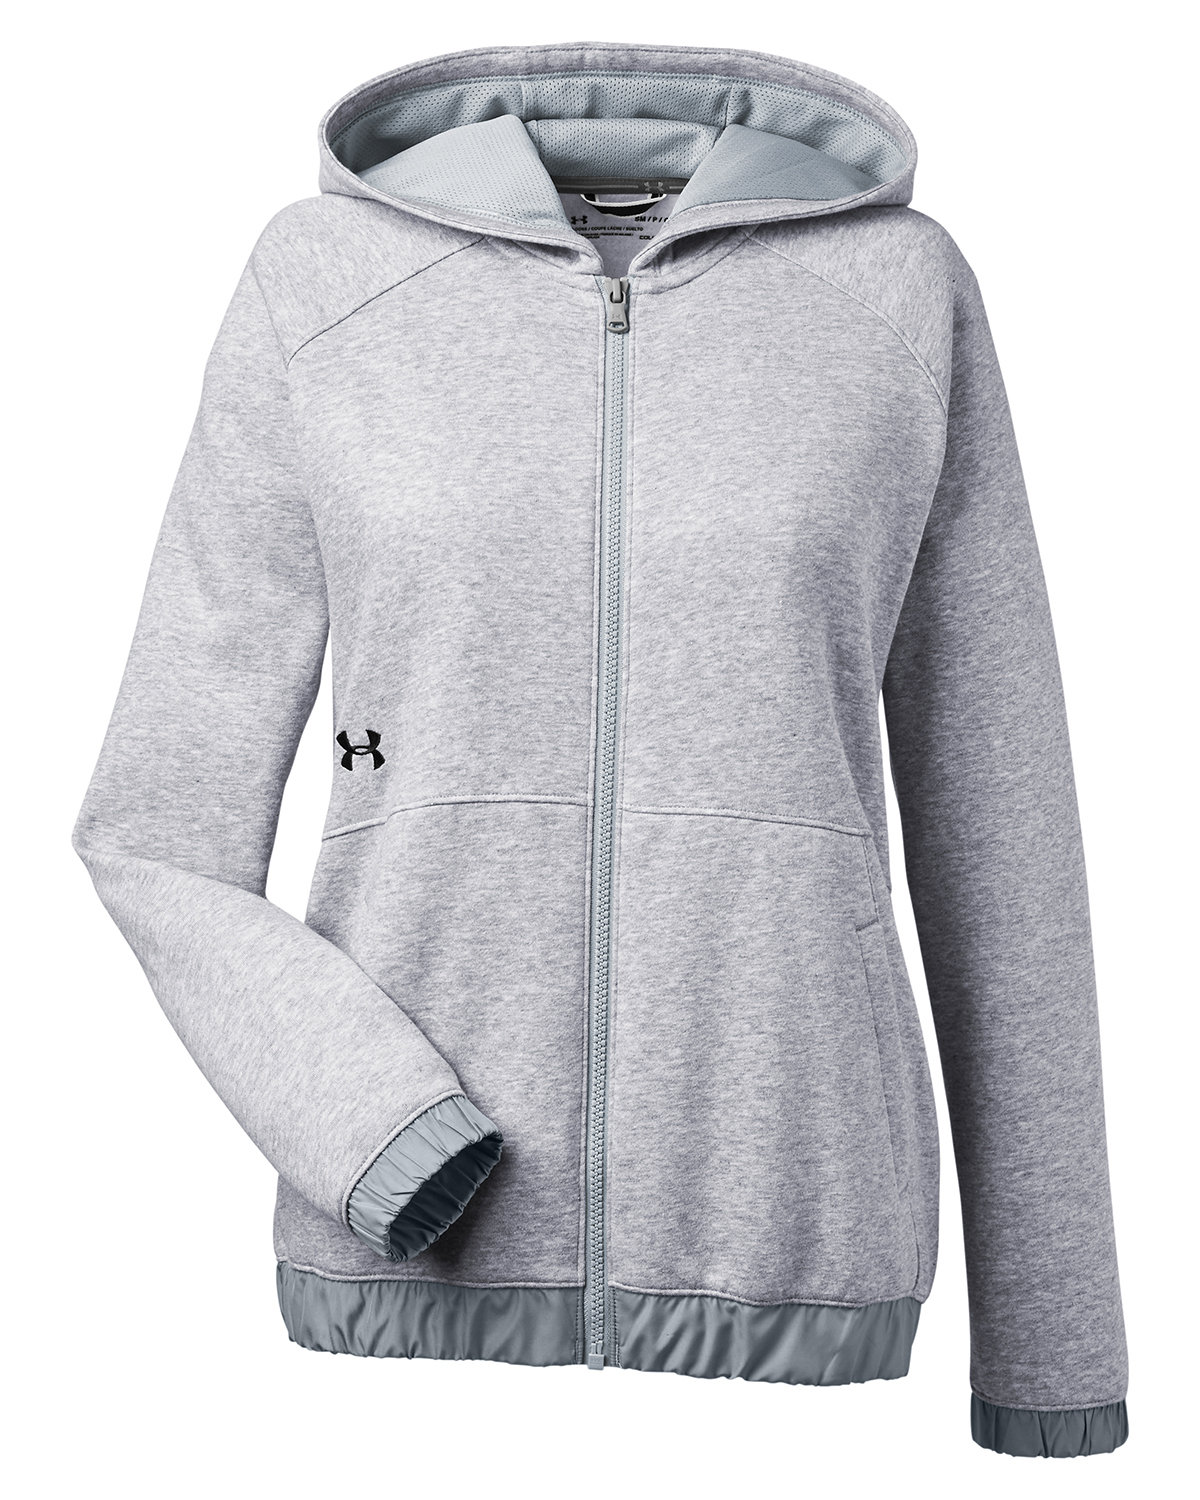 Branded Under Armour Ladies’ Hustle Full-Zip Hooded Sweatshirt True Grey Heather/Black